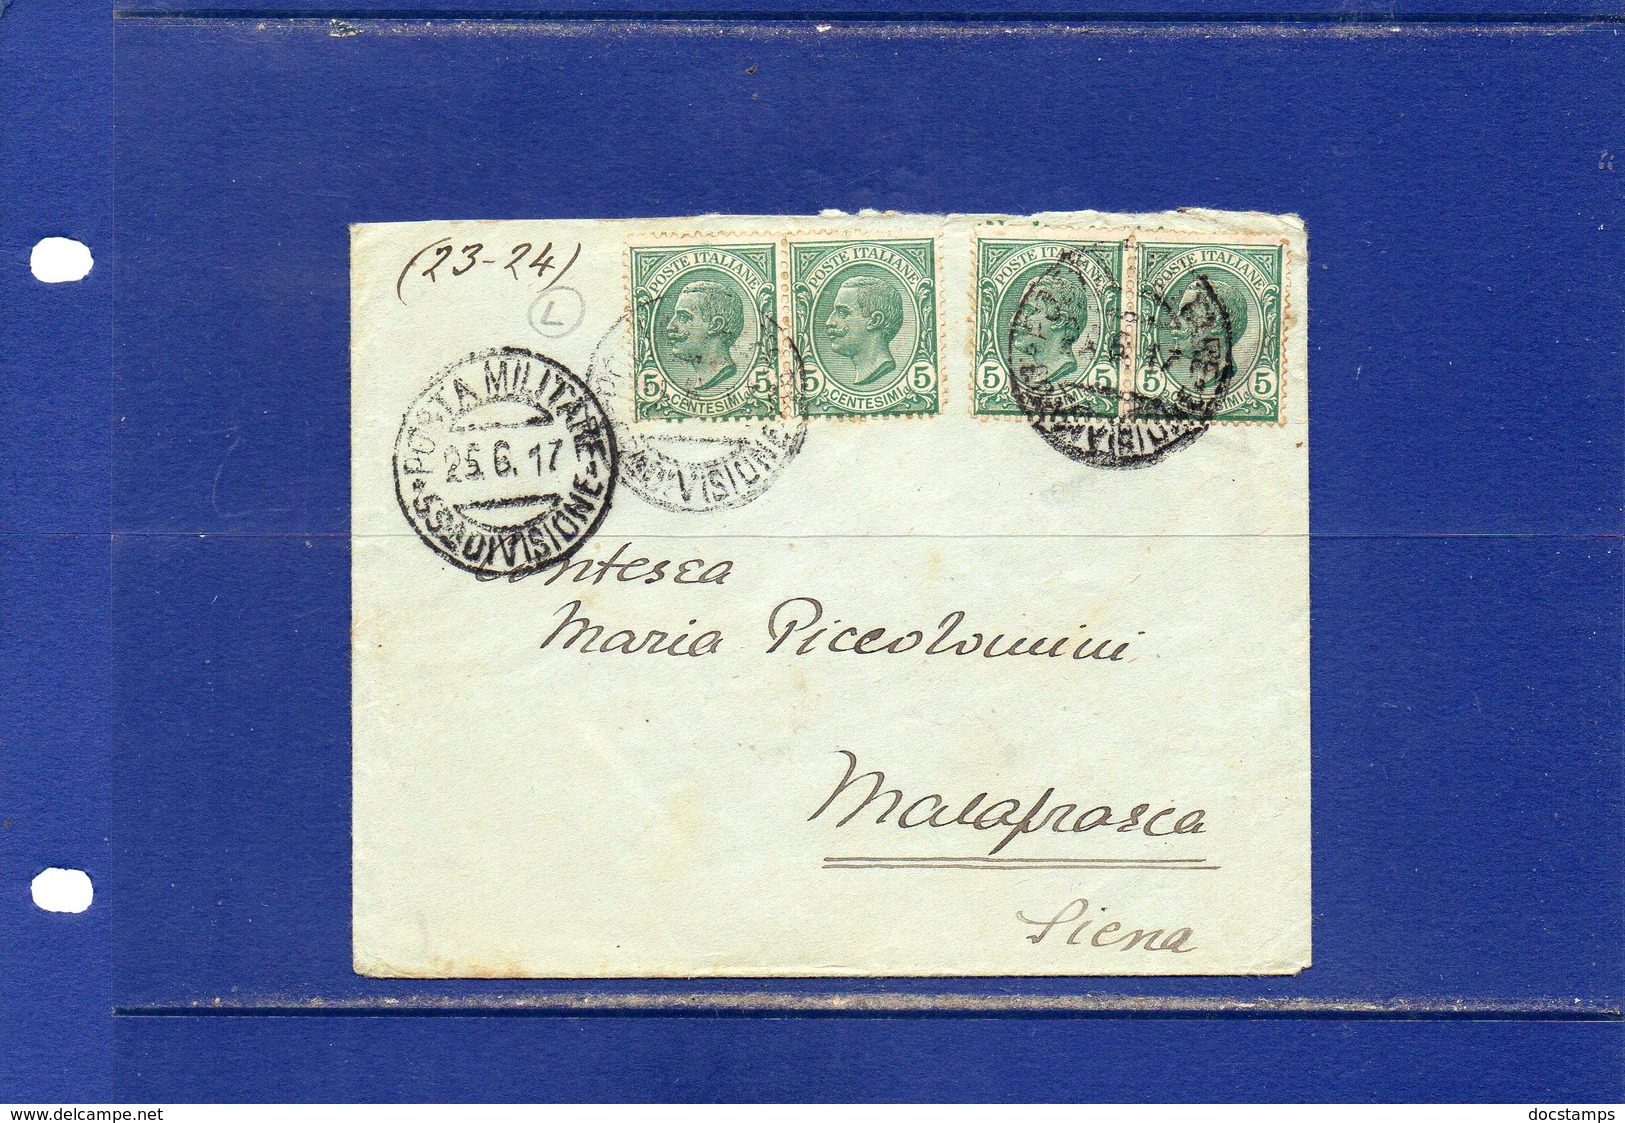 ##(DAN184/1)-1917- Bustina  Annullo Posta Militare 55^ Divisione Per La Contessa Maria Piccolomini A Malafrasca (Siena) - Military Mail (PM)